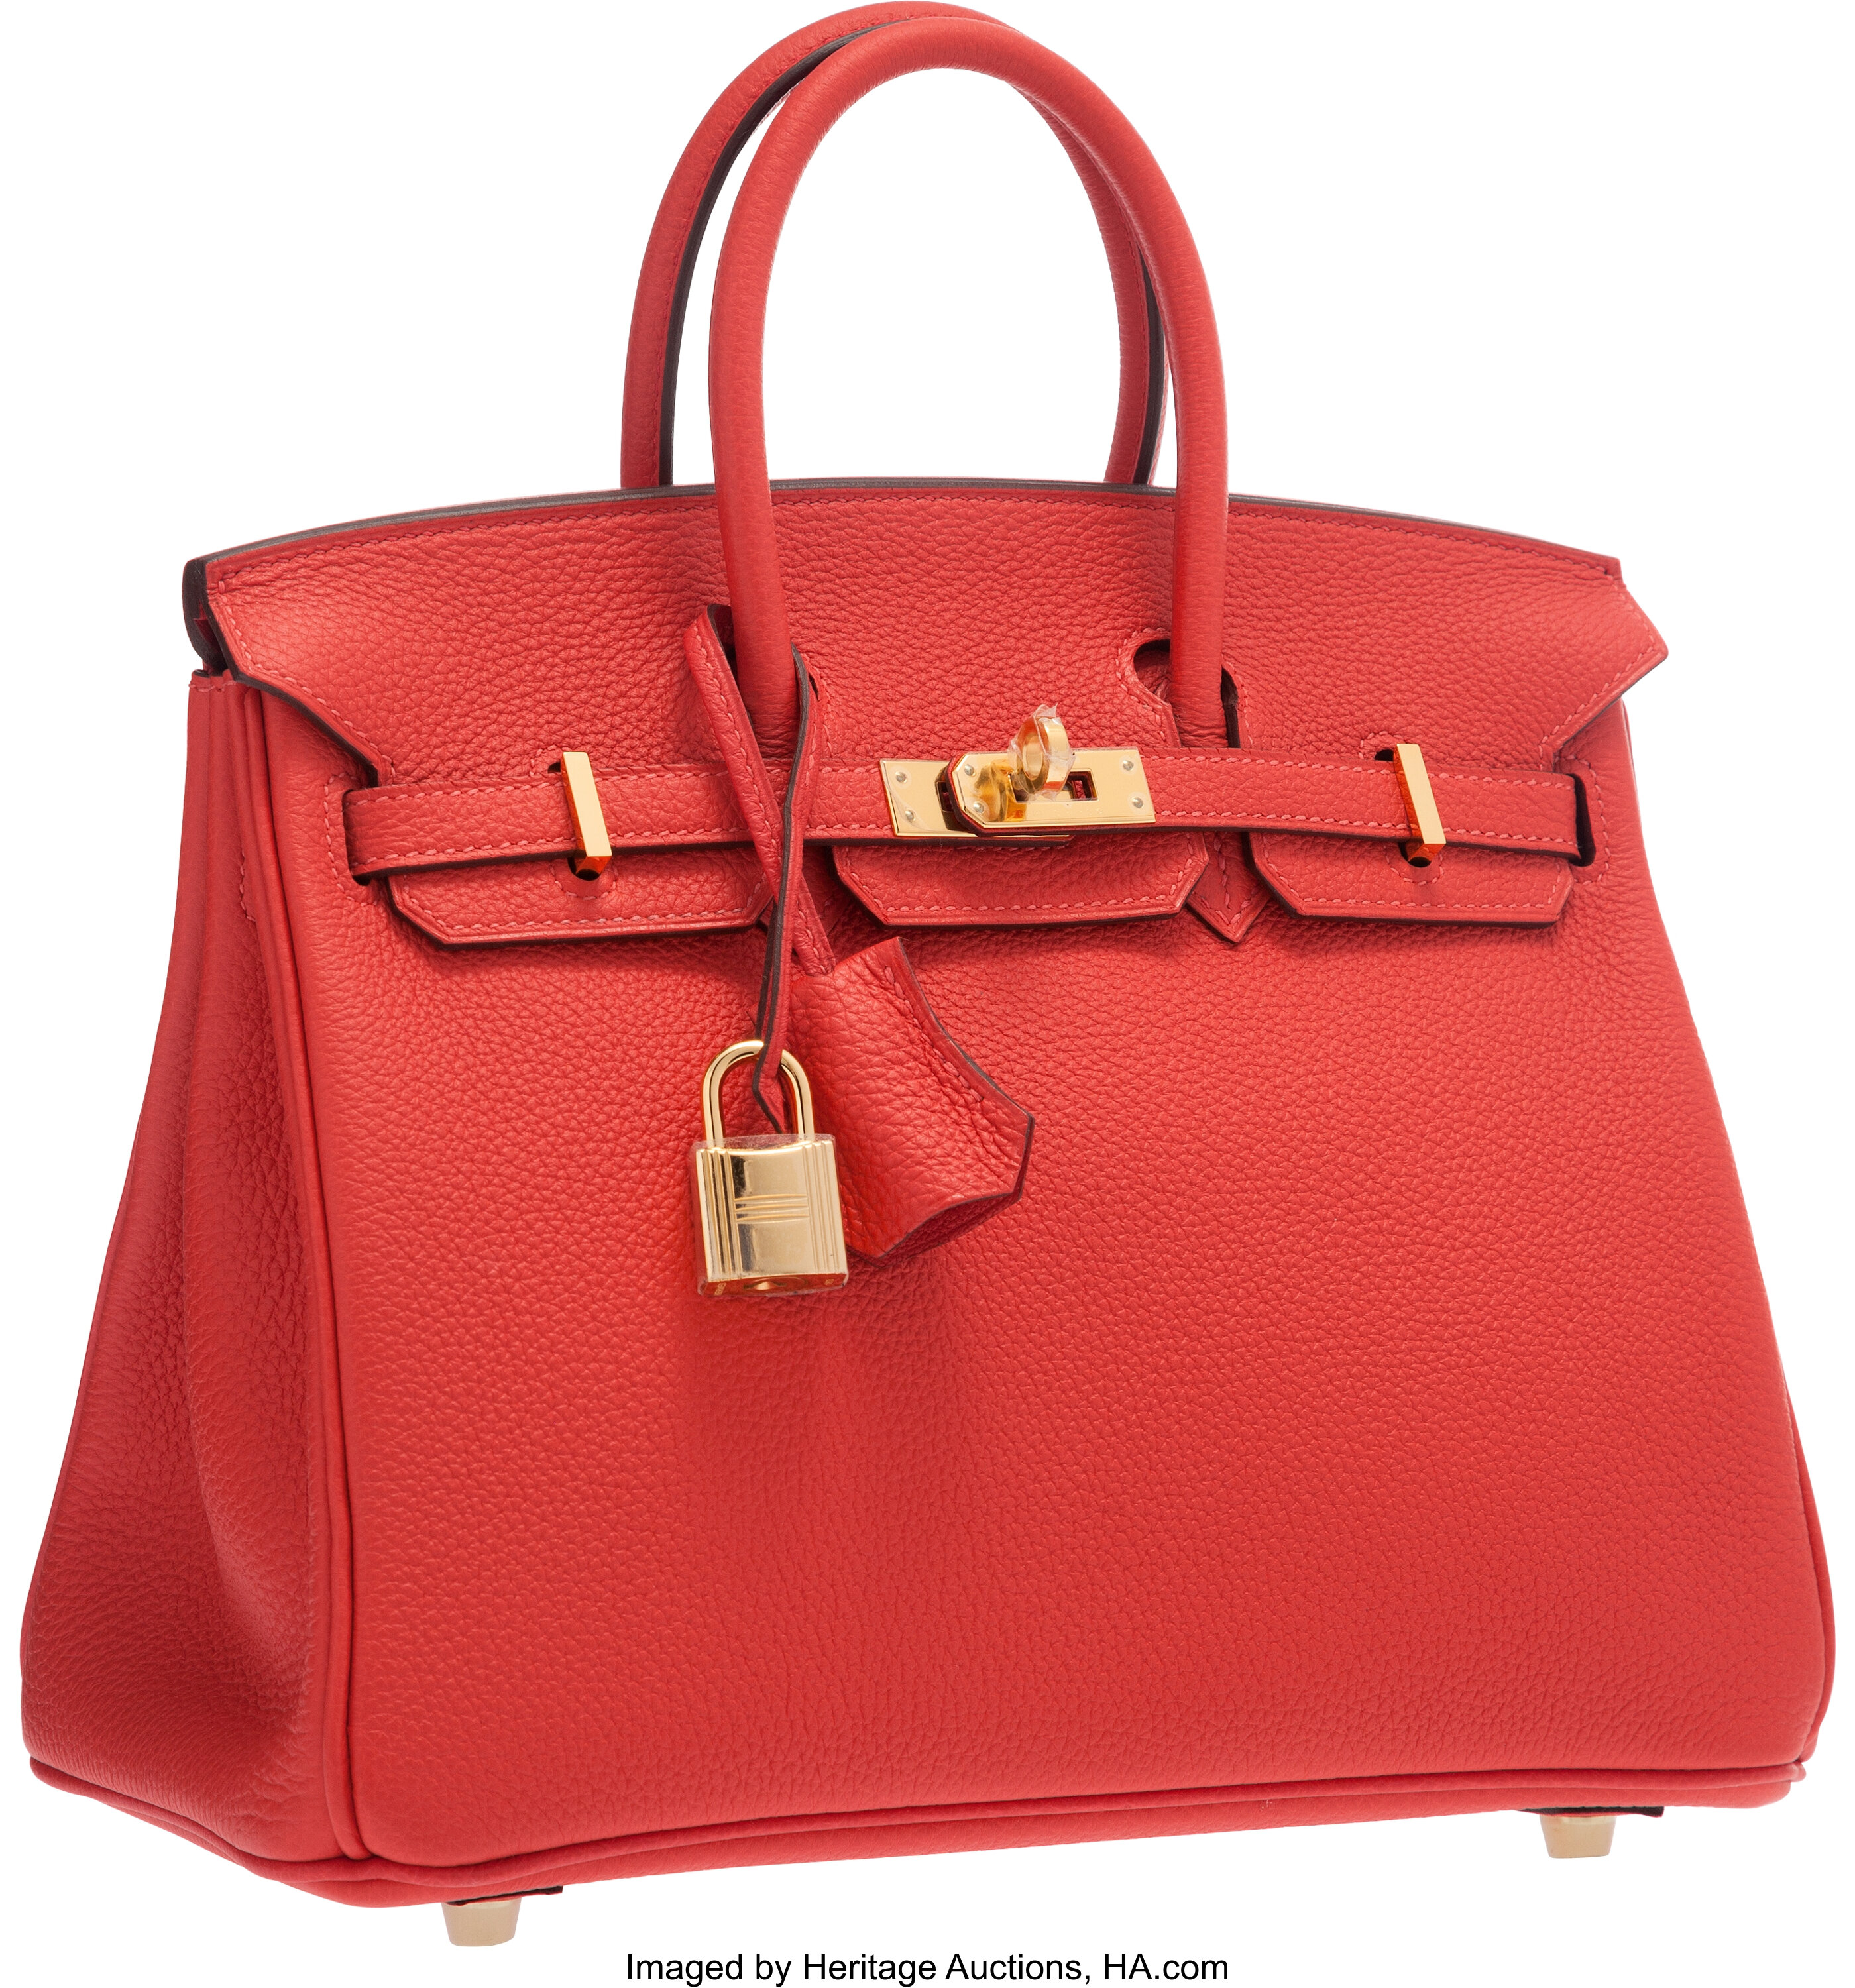 Hermes 25cm Rouge Pivoine Togo Leather Birkin Bag with Gold, Lot #58195